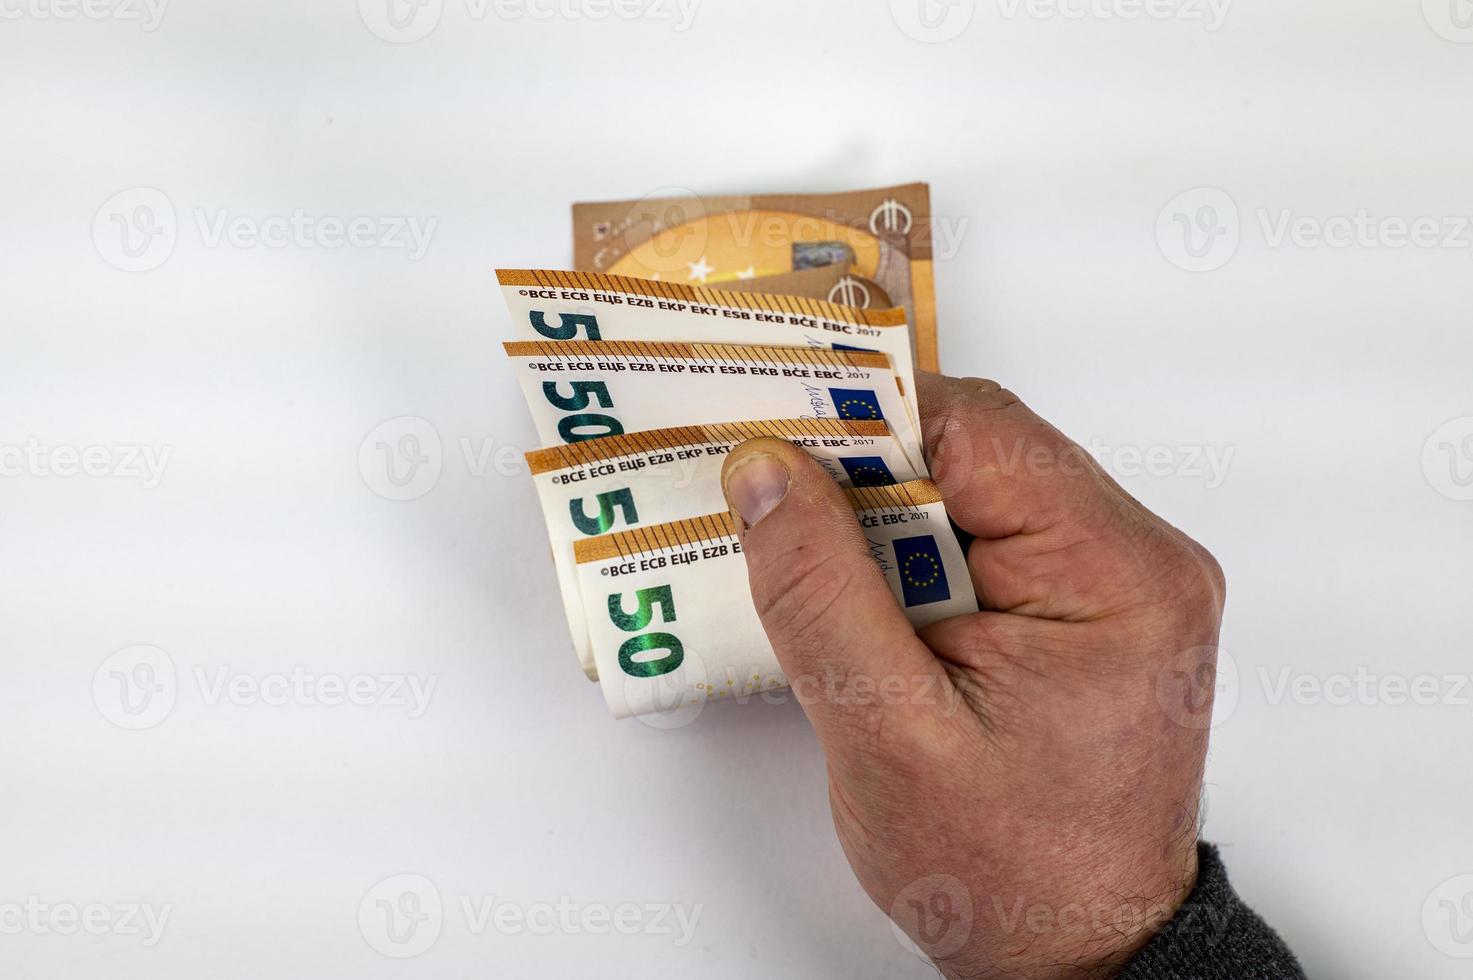 main d'homme comptant 50 billets en euros photo